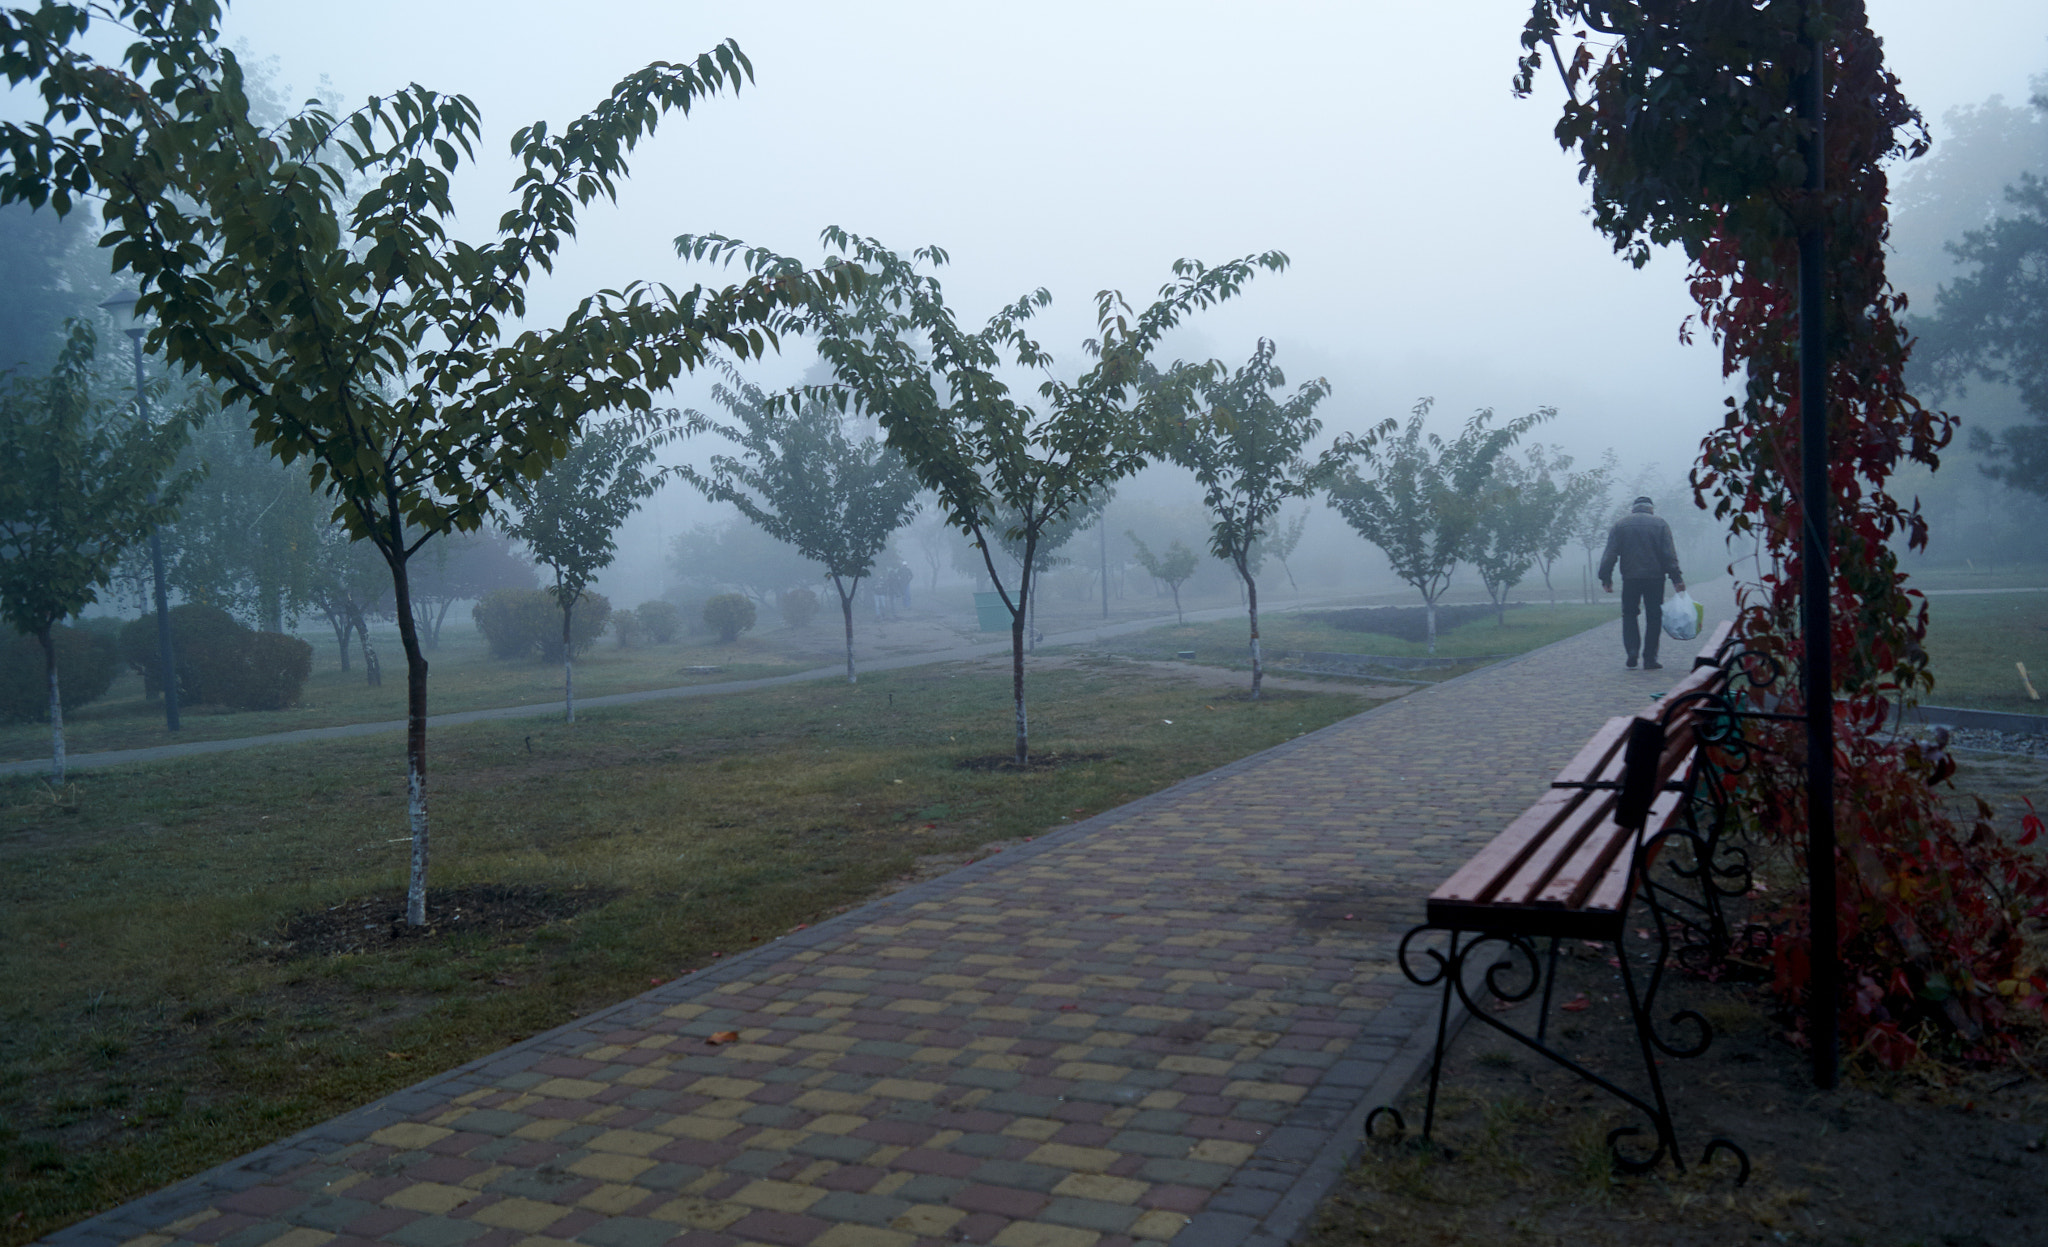 Sony SLT-A37 sample photo. Park in fog photography